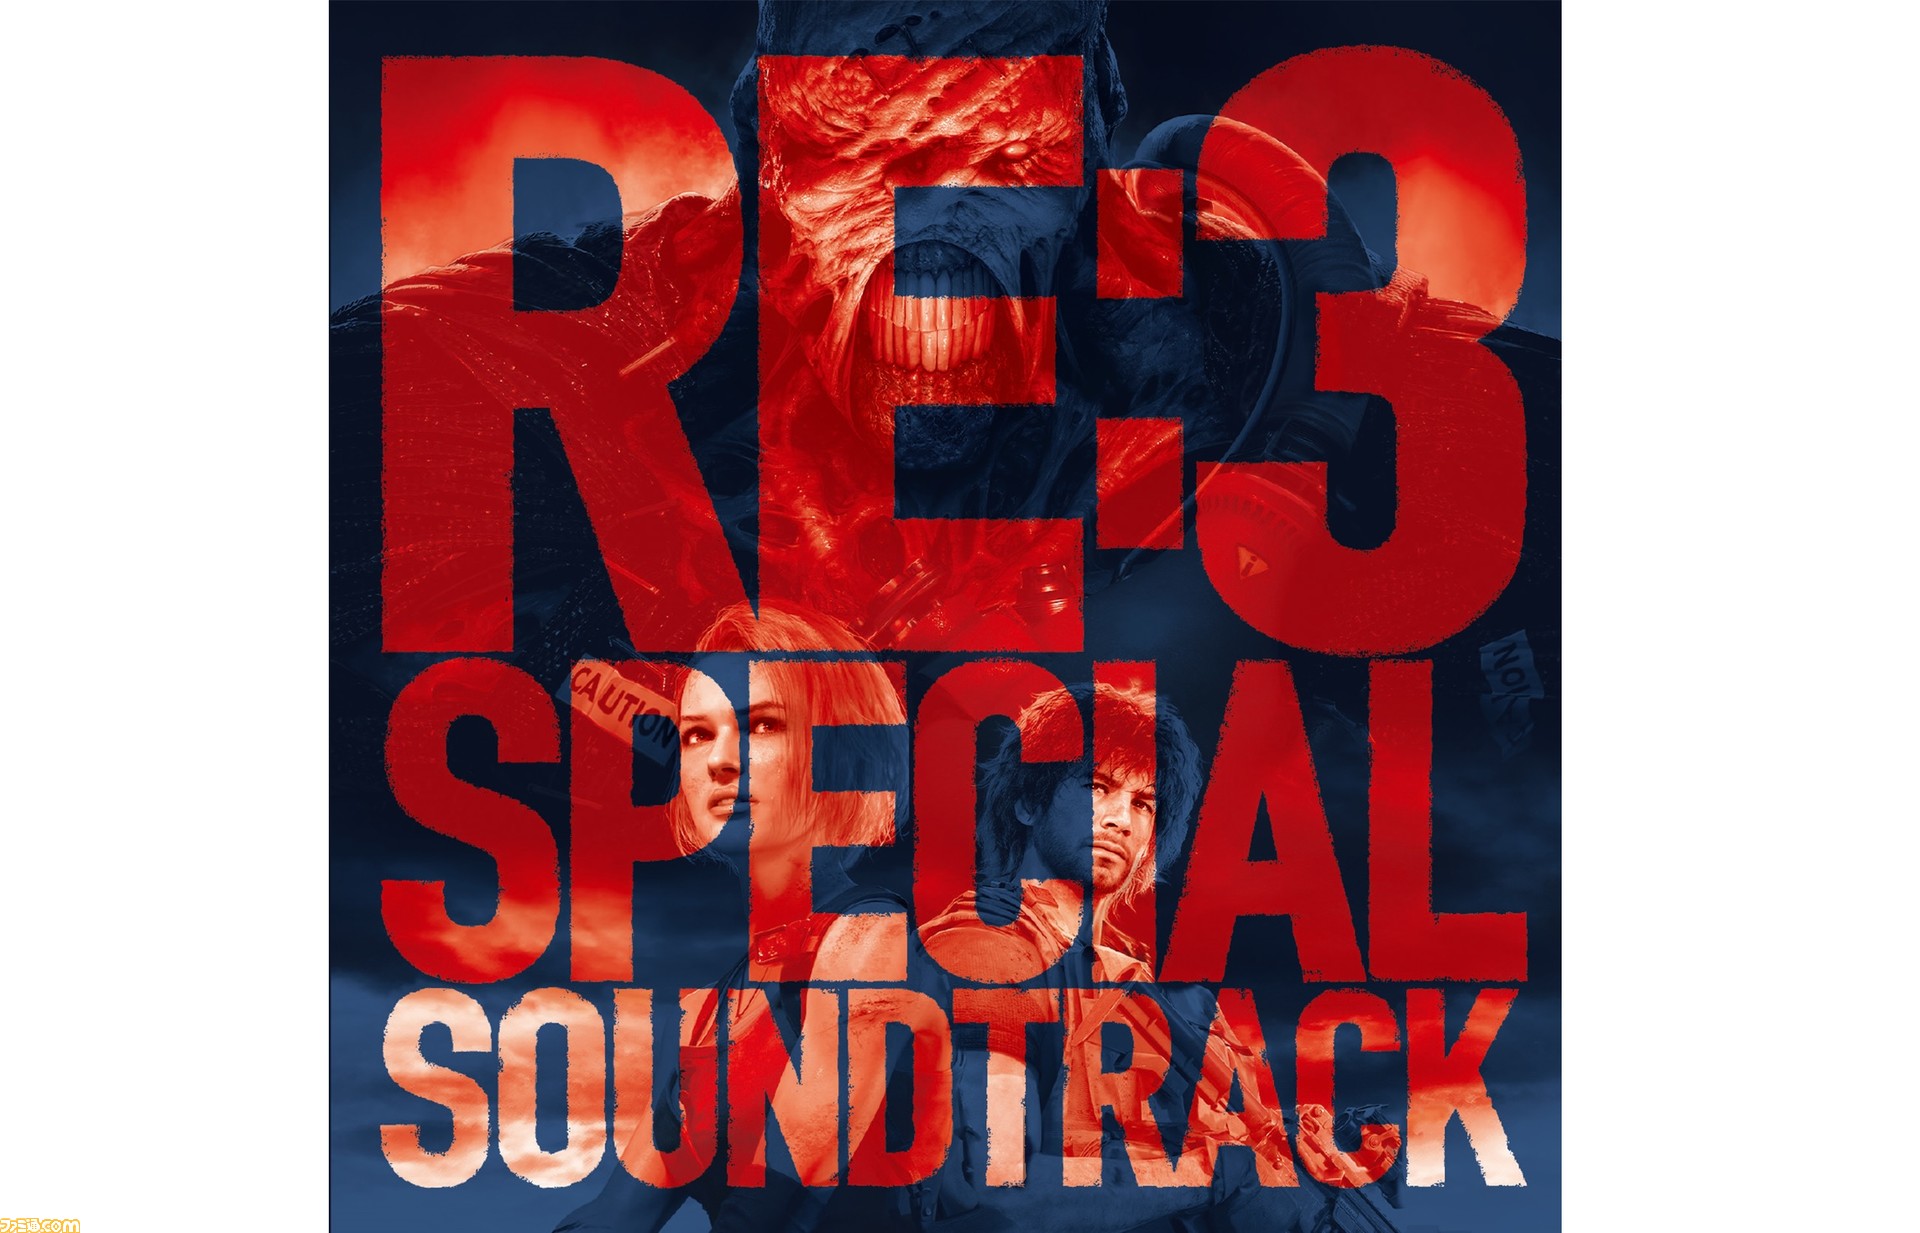 バイオハザード Re 3 スペシャル サウンドトラック早くも配信開始 サバイバルホラーを彩る渾身の45曲 ファミ通 Com